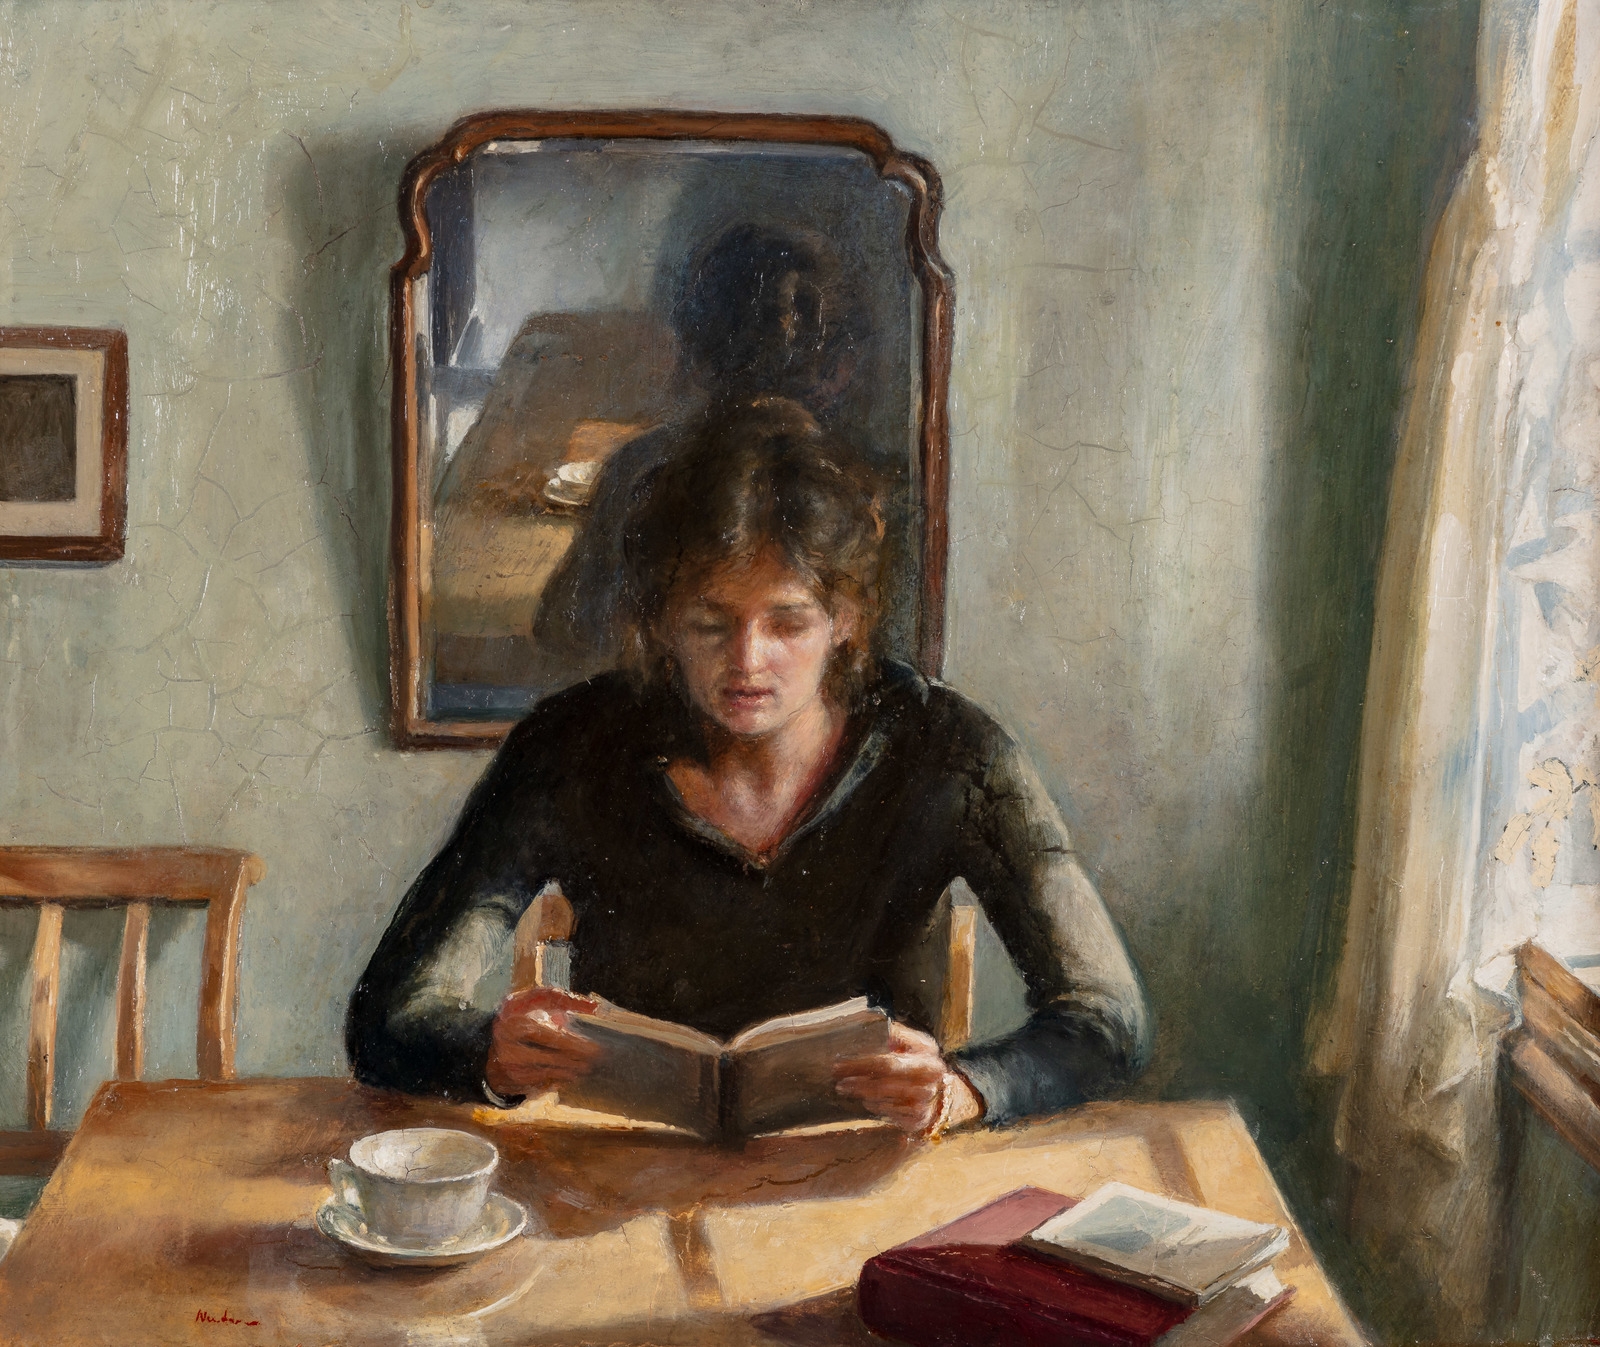 Lesende kvinne by Odd Nerdrum